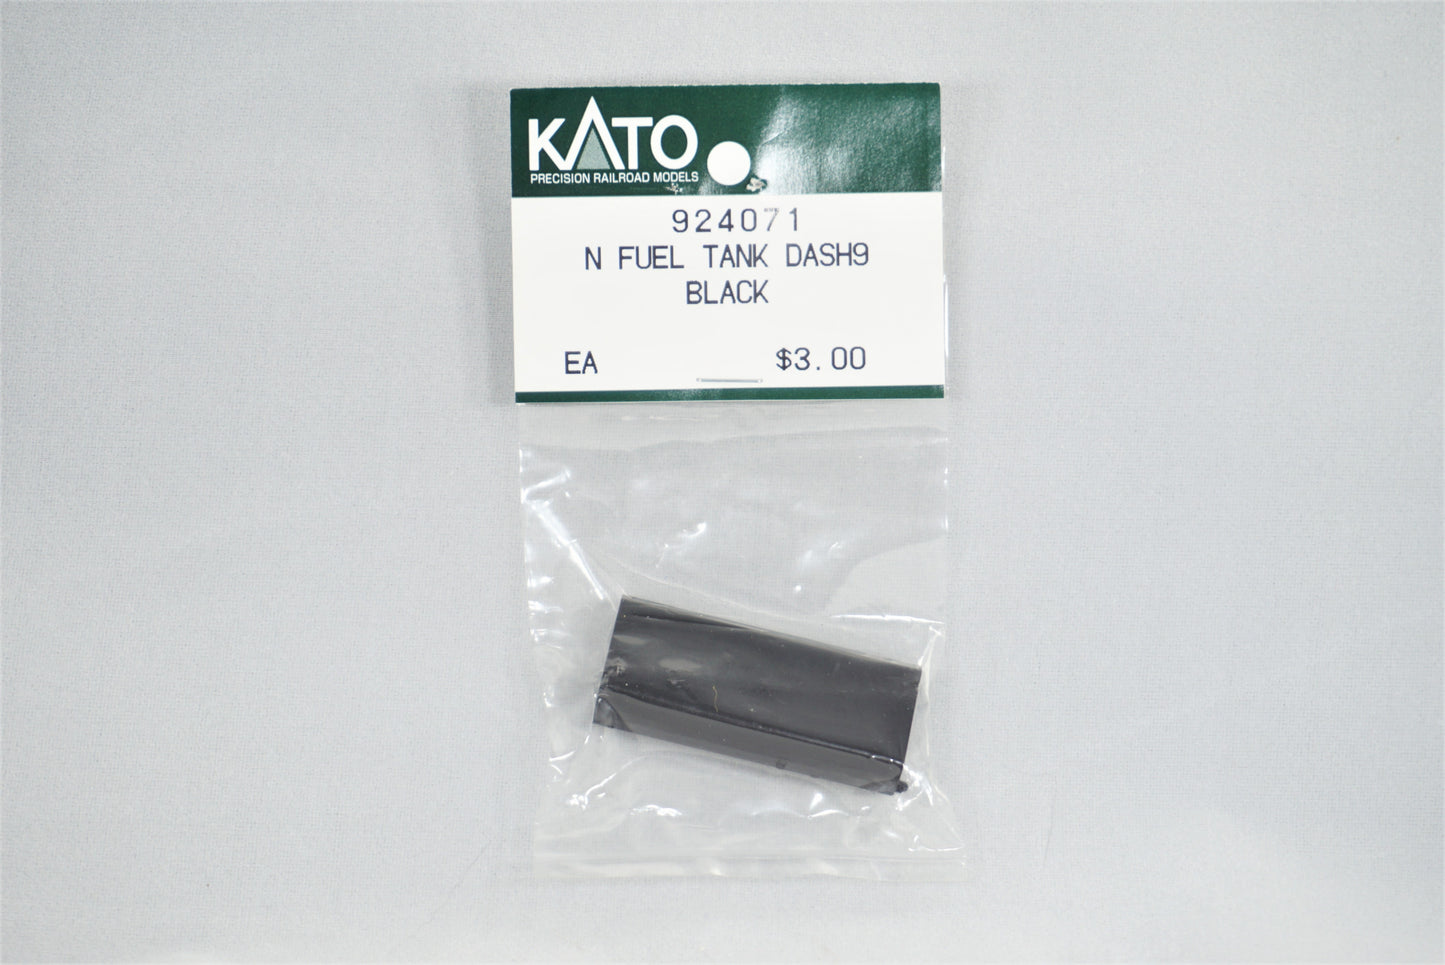 KAT-924071 - Fuel tank - Dash 9 - Black